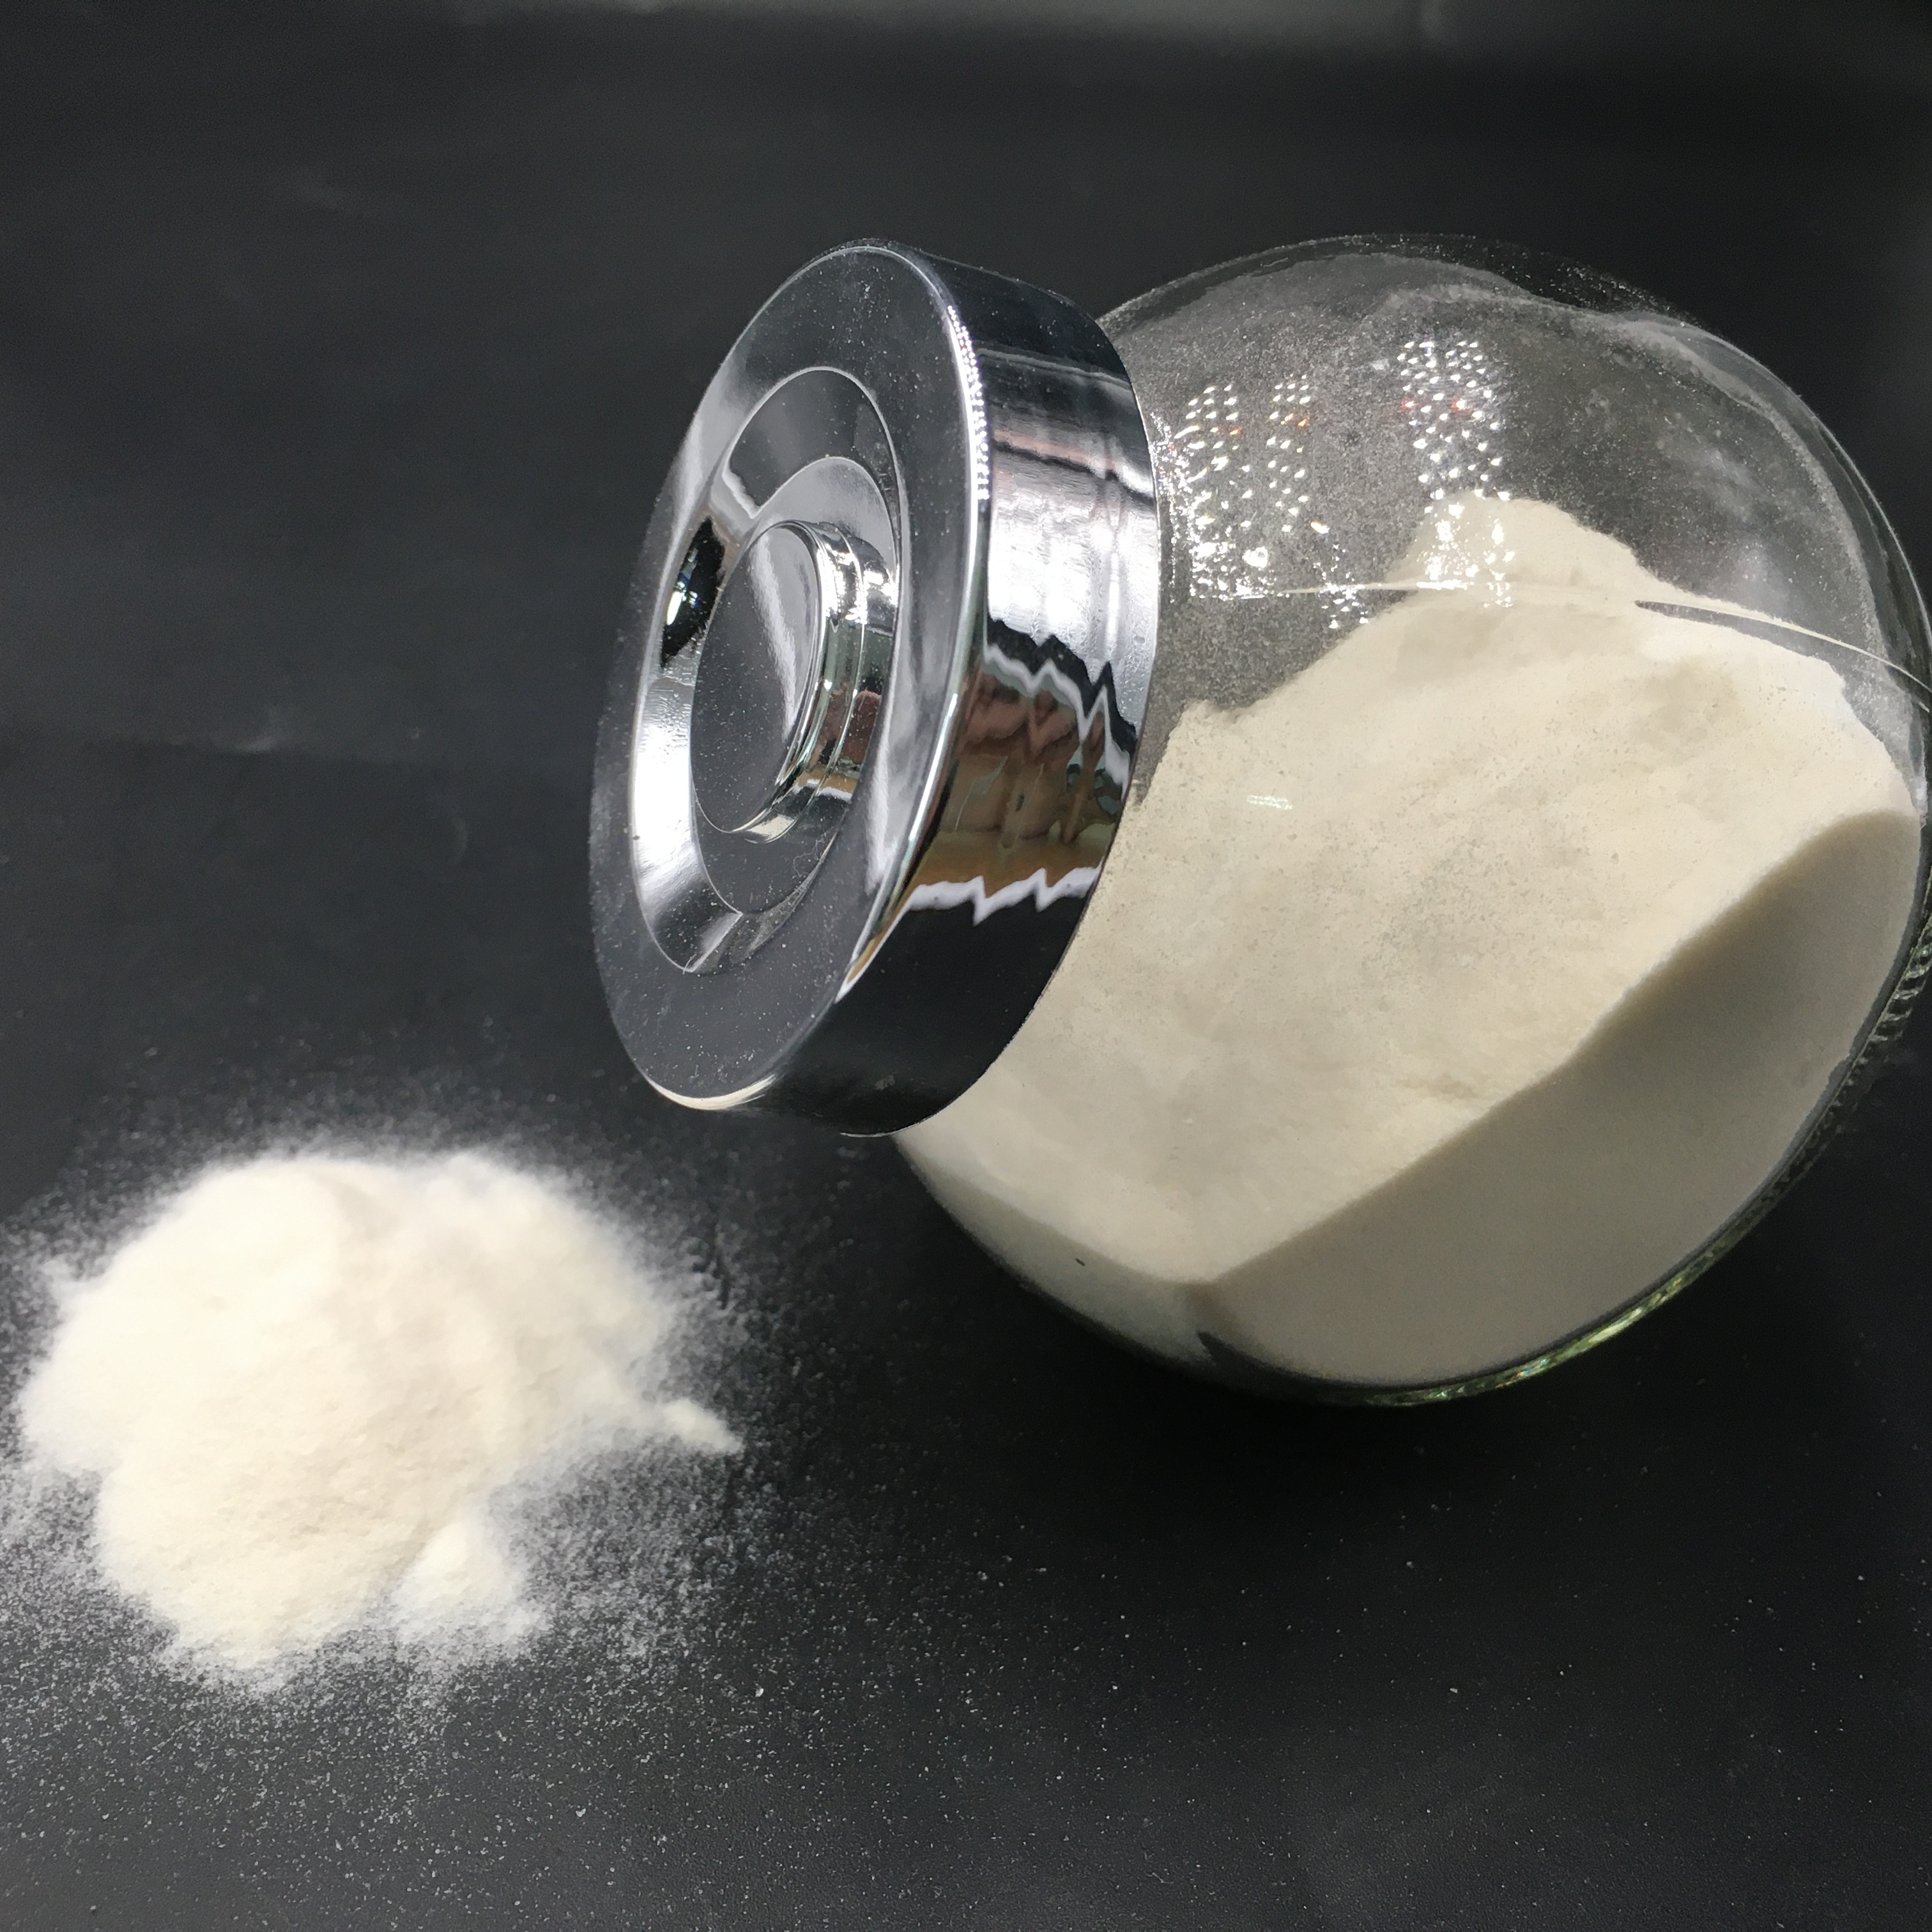 Prezzo all'ingrosso di alta qualità agar agar in polvere addensante per alimenti produttore di alimenti per budino / yogurt